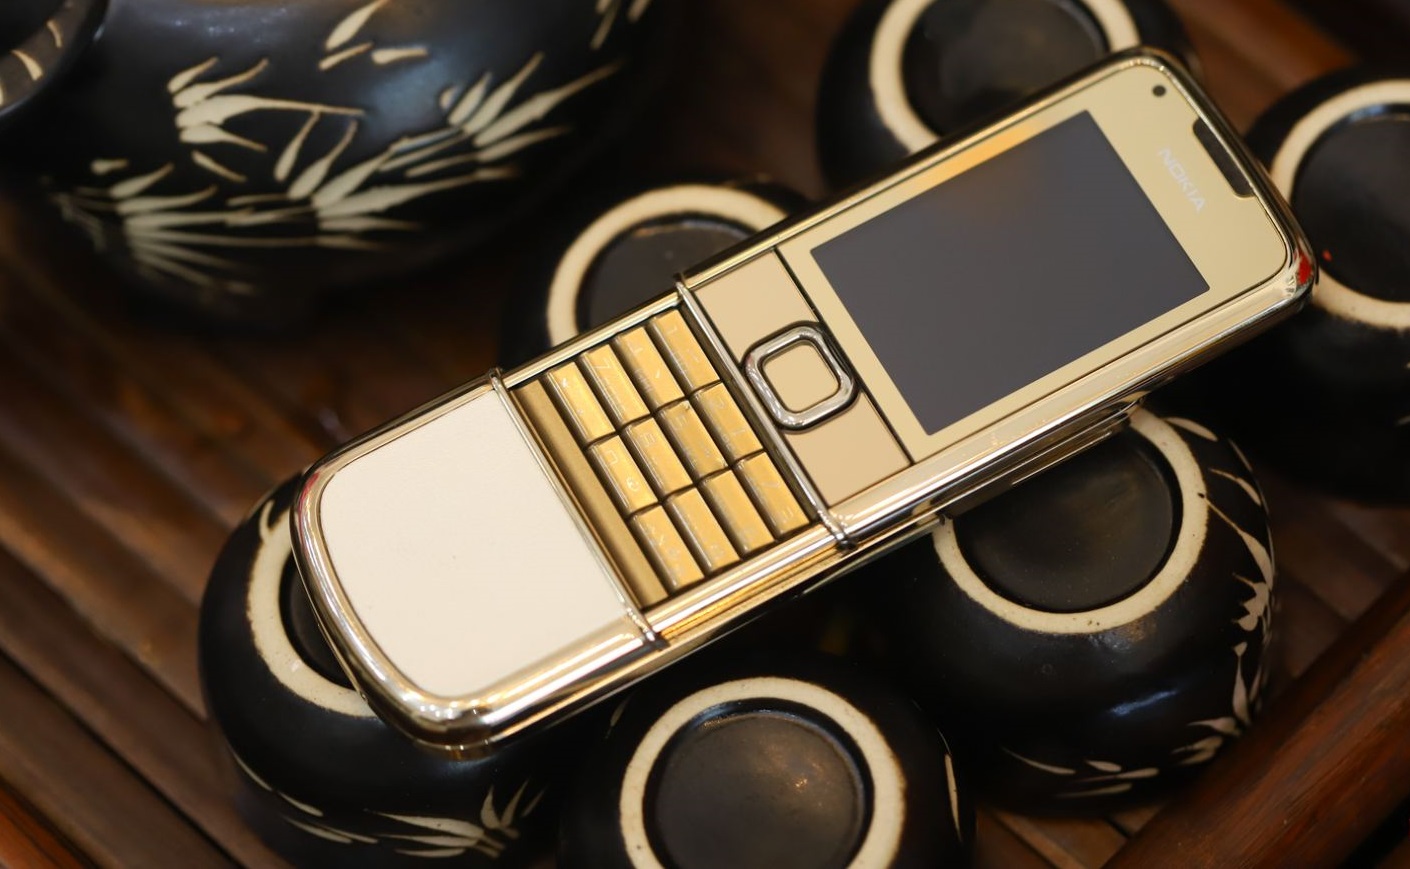 Nokia 8800 Gold Arte là một sản phẩm điện thoại cao cấp đến từ thương hiệu nổi tiếng Nokia. Mẫu điện thoại này được thiết kế với đường nét sang trọng, đẳng cấp và được chế tác từ những chất liệu tinh xảo như vàng nguyên khối. Điều này đã tạo nên một sản phẩm cực kỳ độc đáo và được săn đón bởi những người yêu thích sự hoàn hảo.